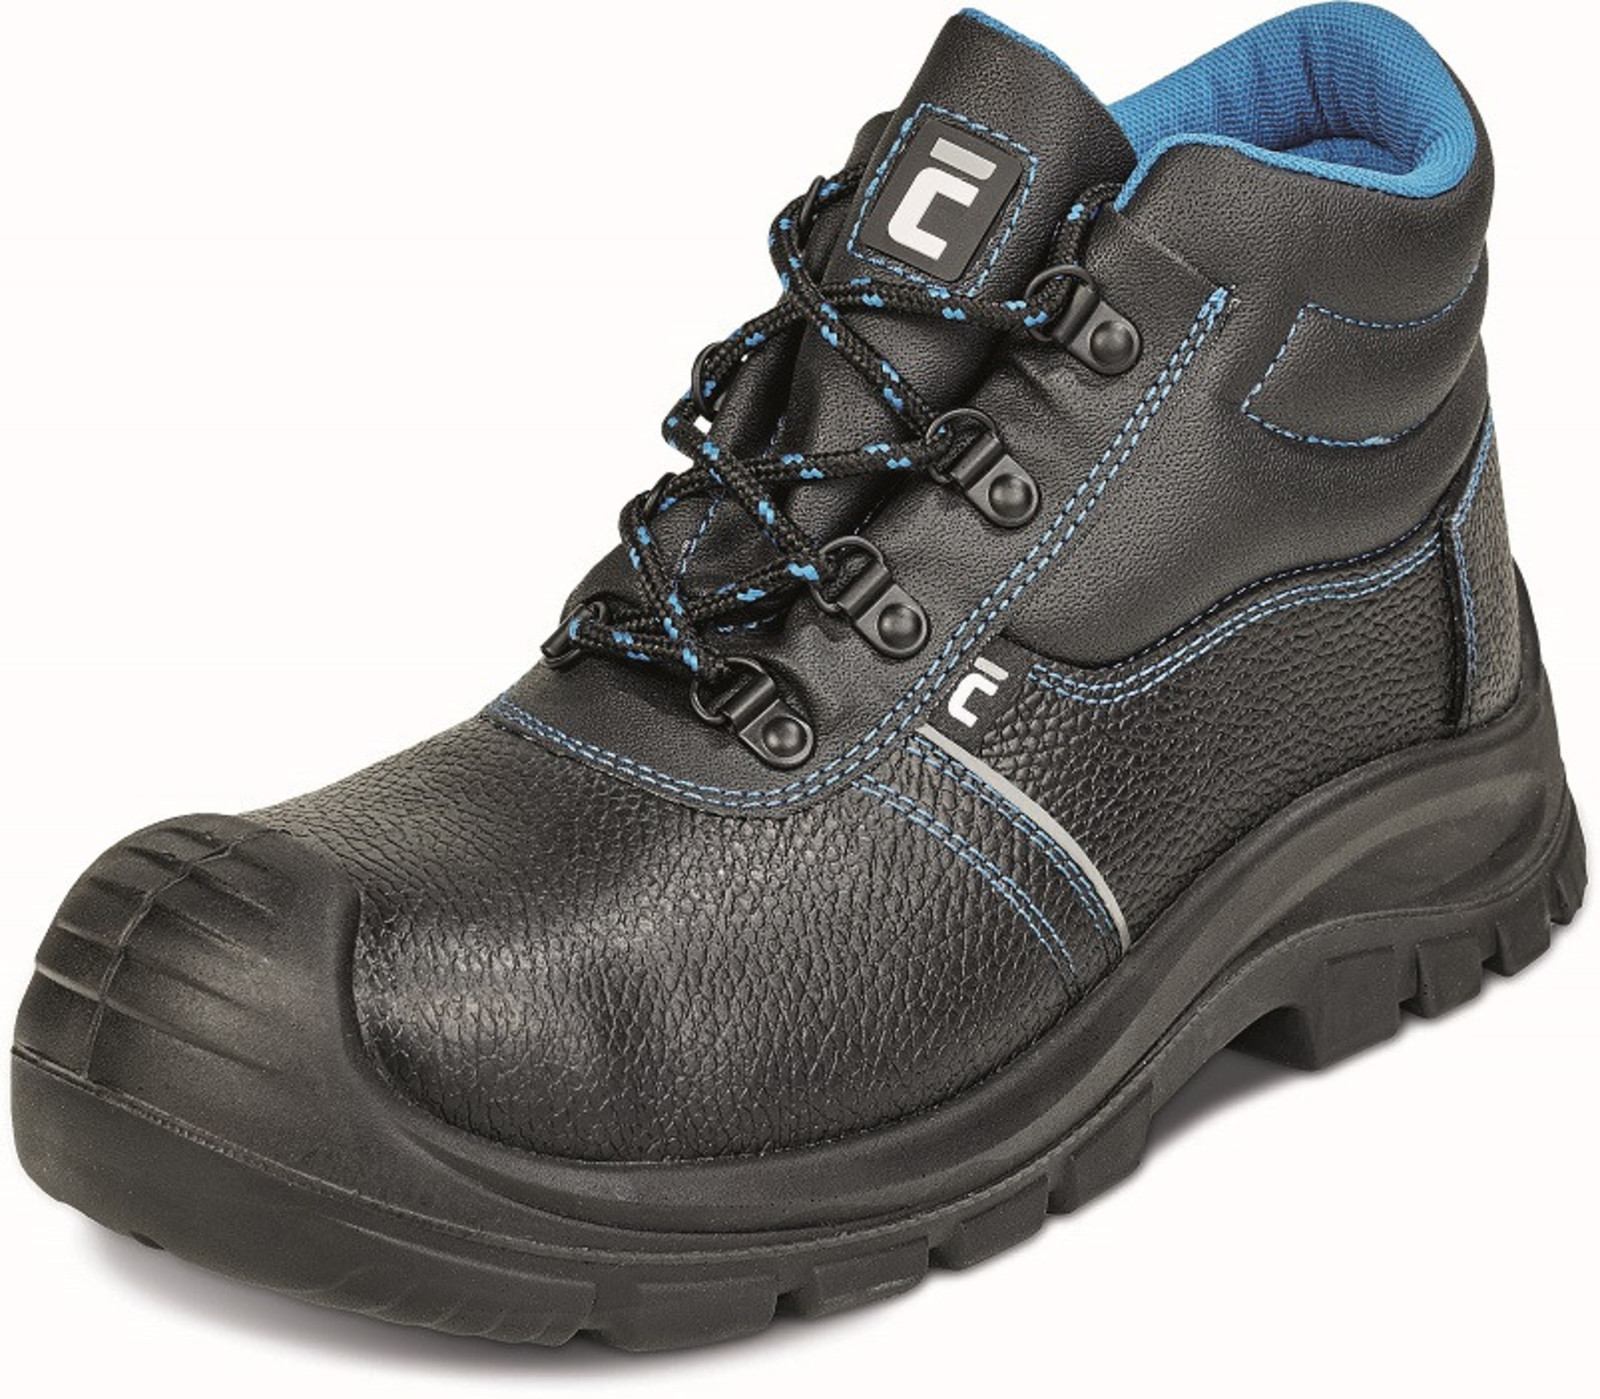 Bezpečnostná obuv Raven XT S3 - veľkosť: 38, farba: čierna